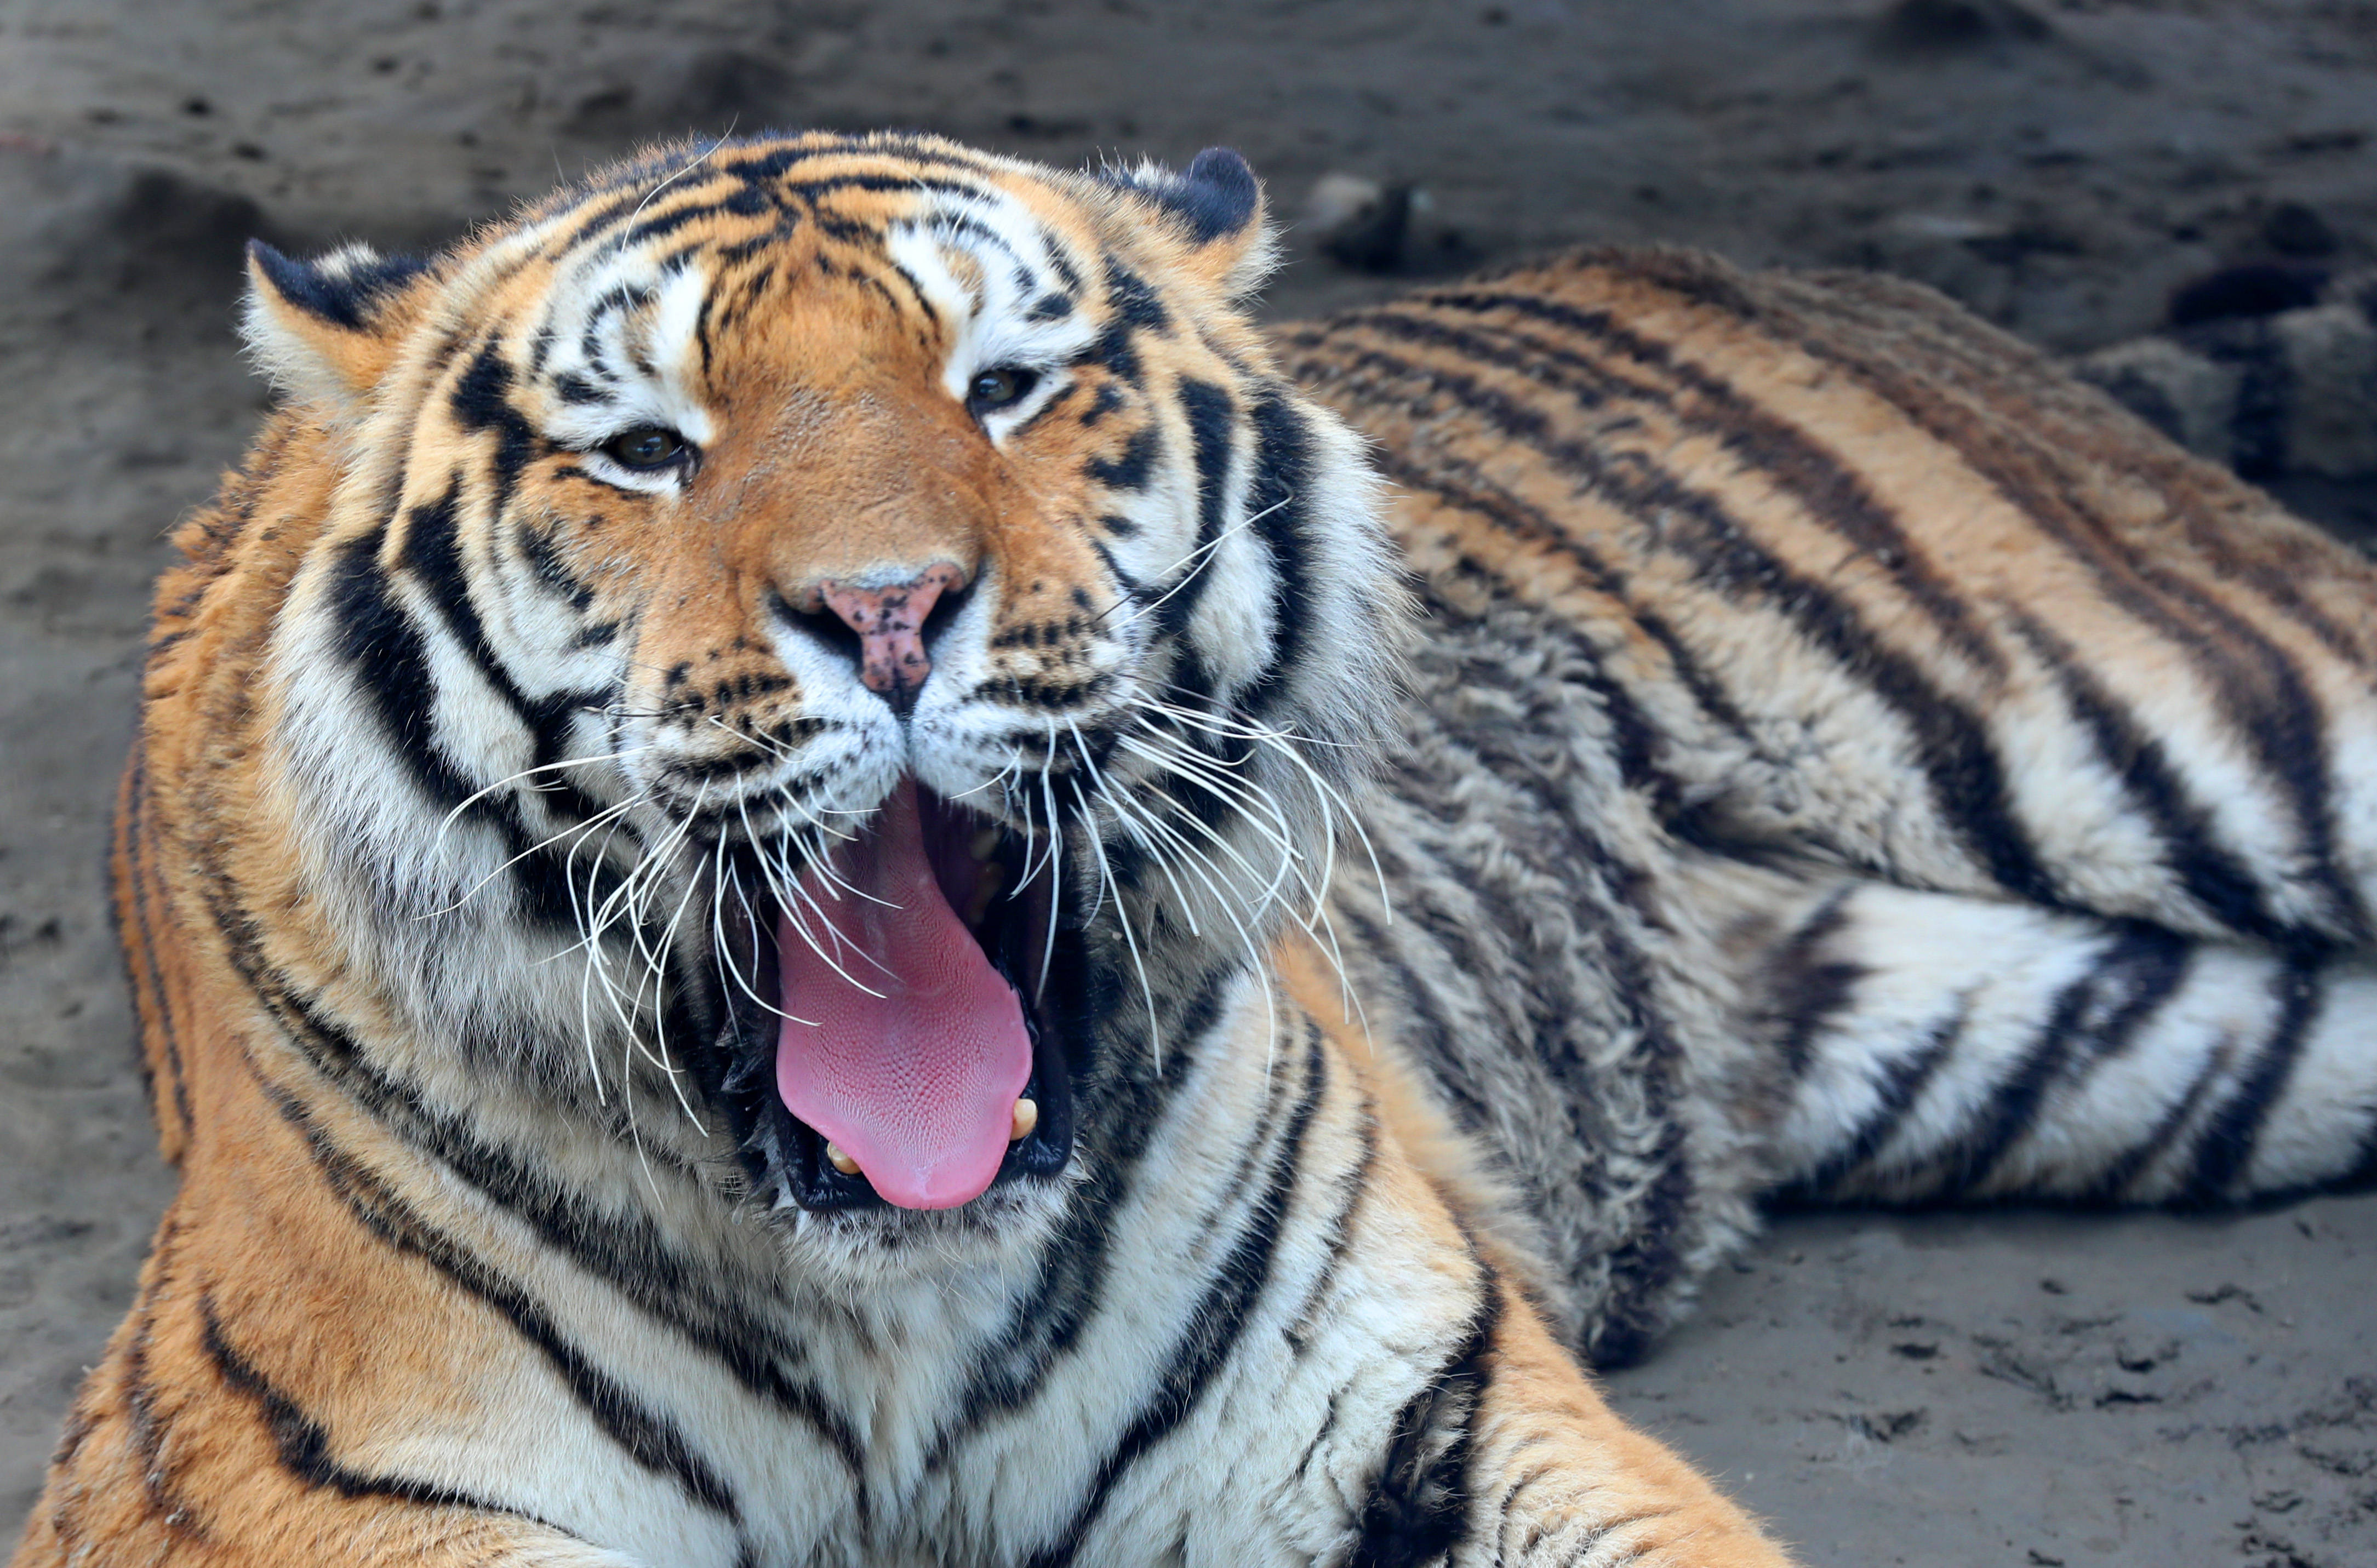 原创孟加拉白虎东北虎江苏南通森林野生动物园群虎亮相迎虎年